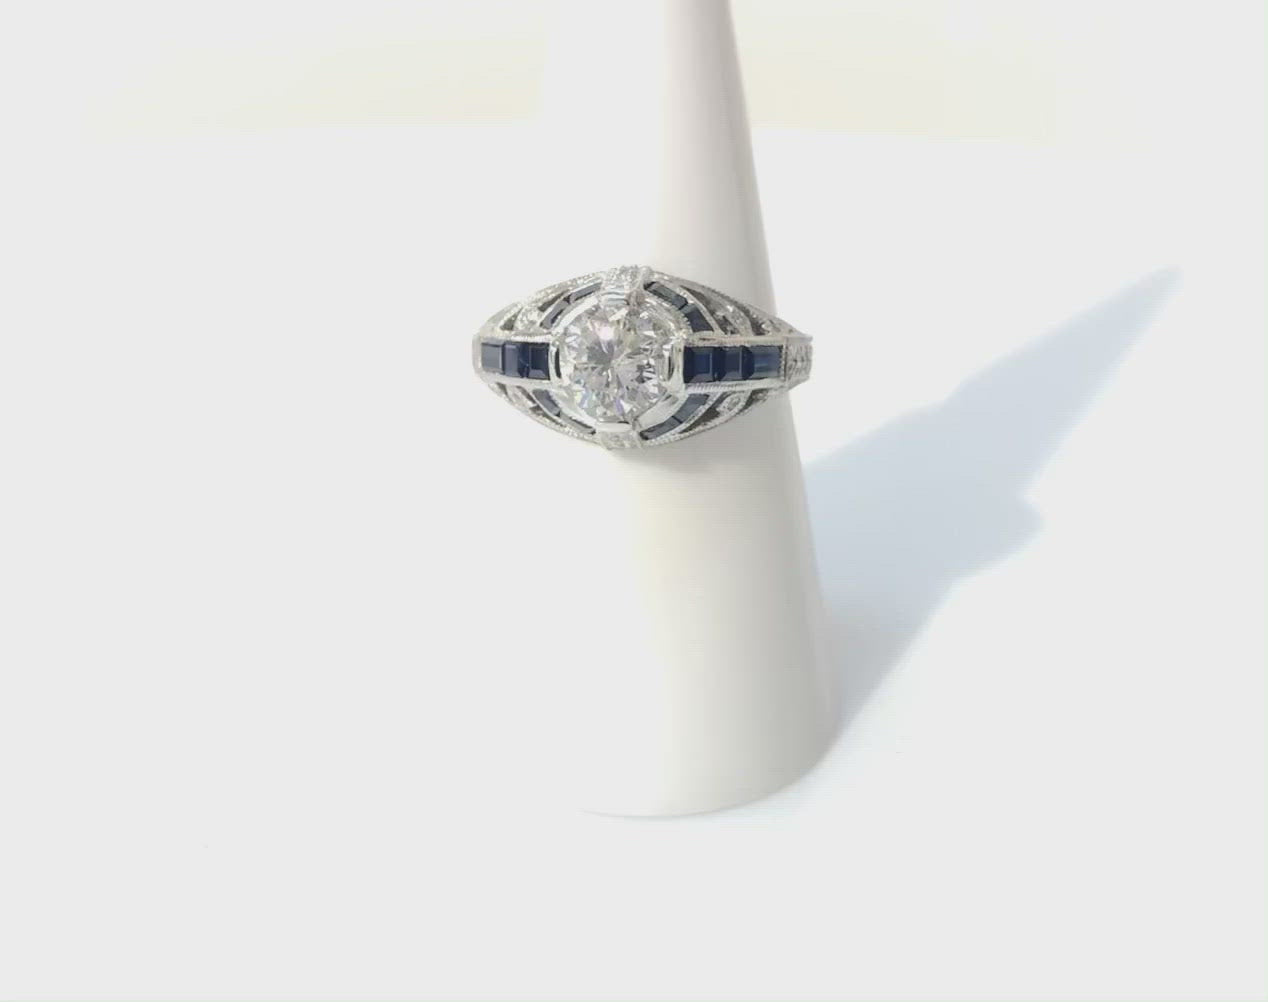 This unique Art Deco engagement ring has blue sapphire stripes.